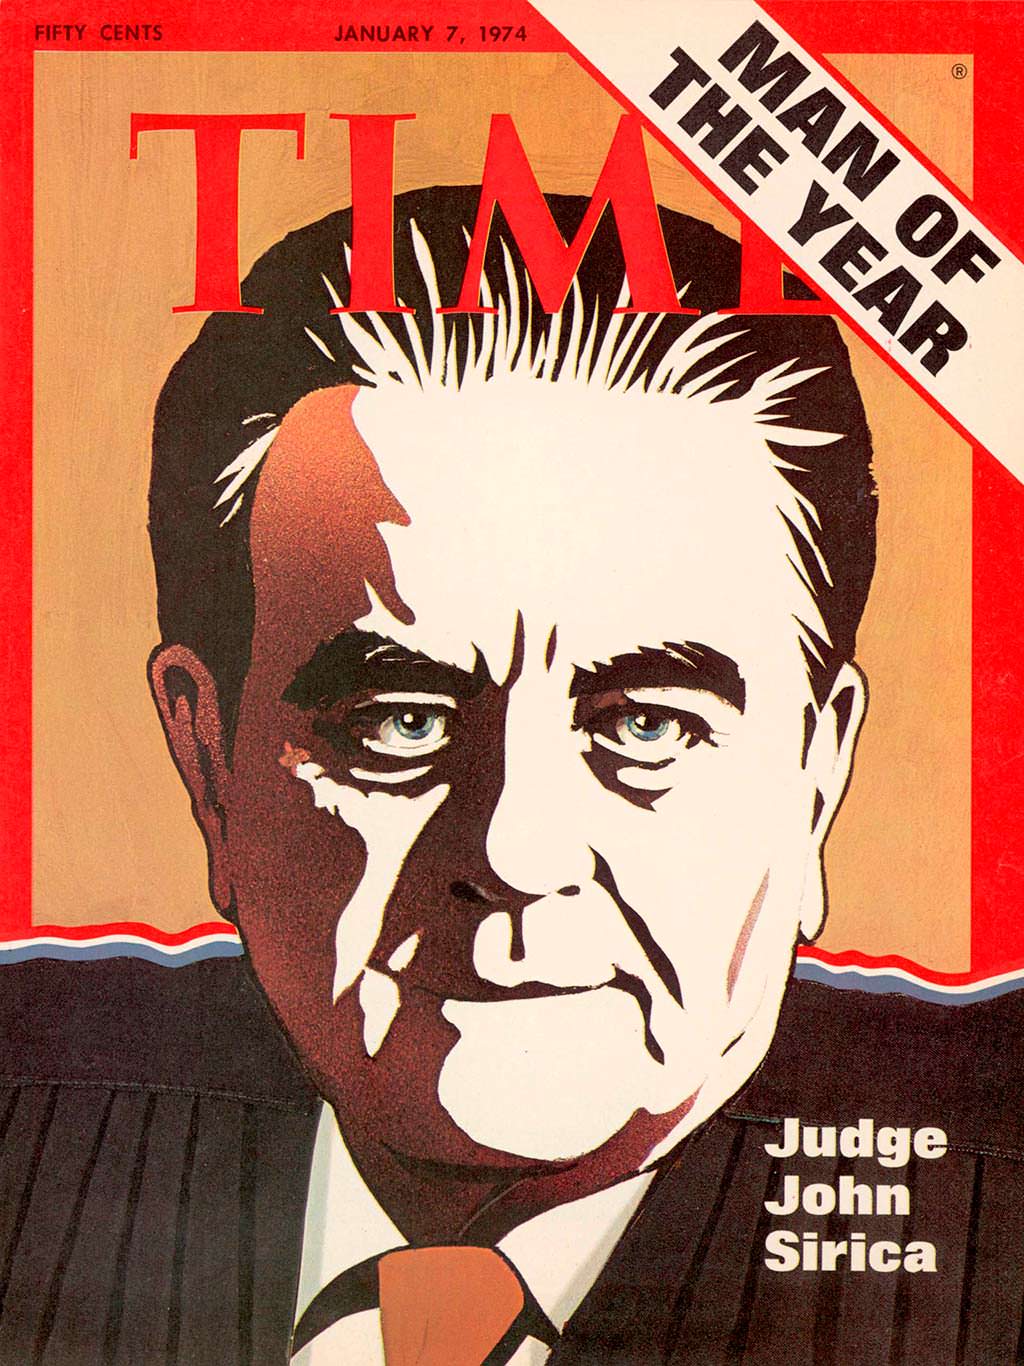 1973 год. Американский судья Джон Сирика на обложке Time